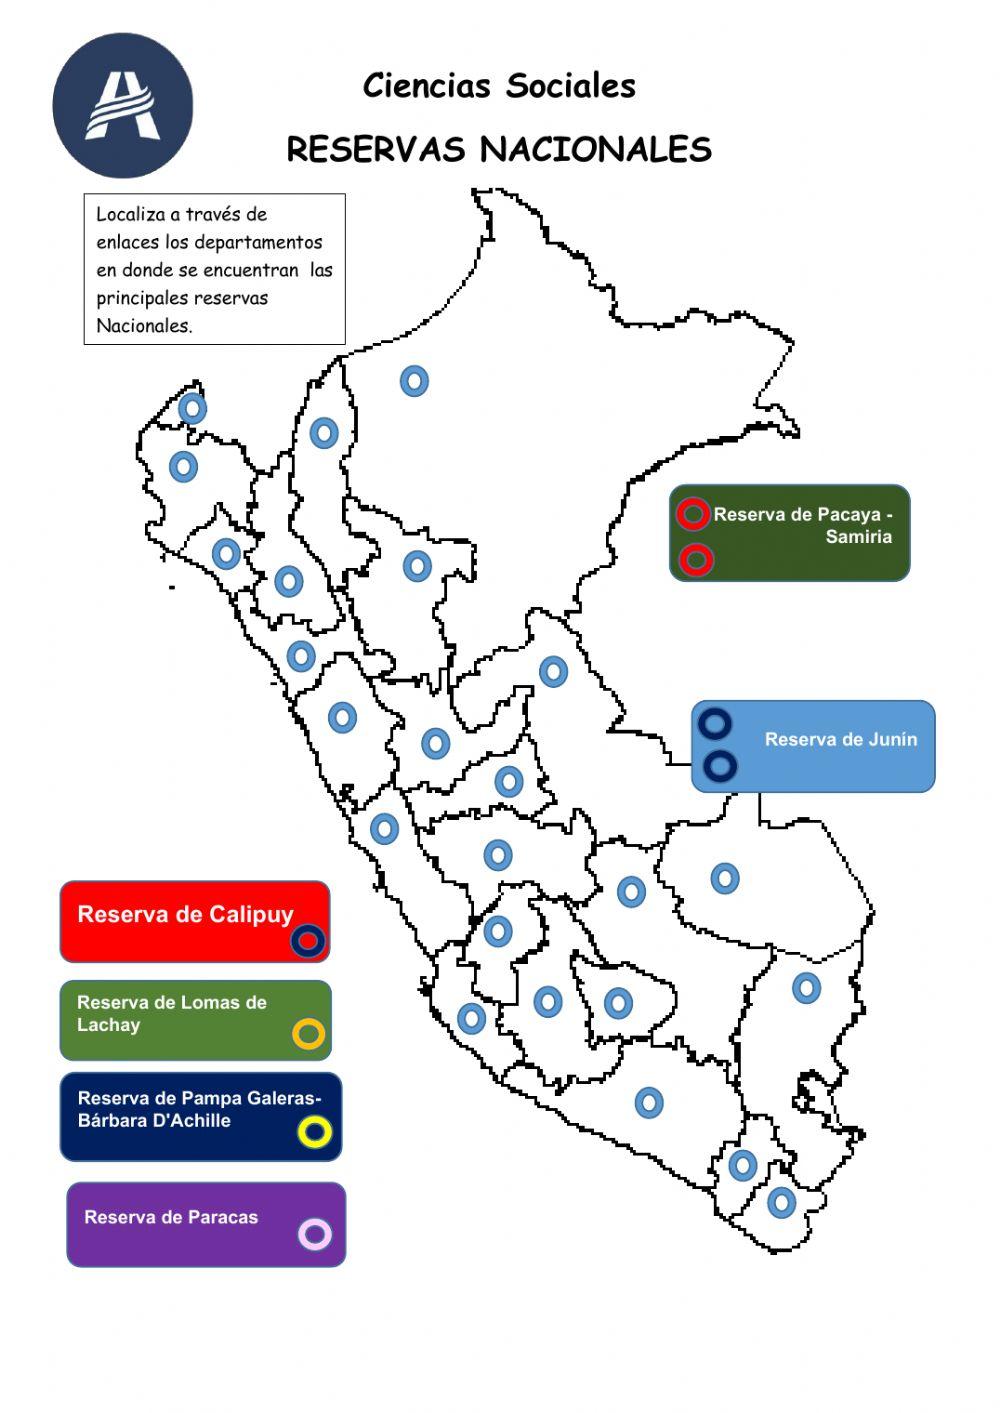 Principales Reservas Nacionales del Perú